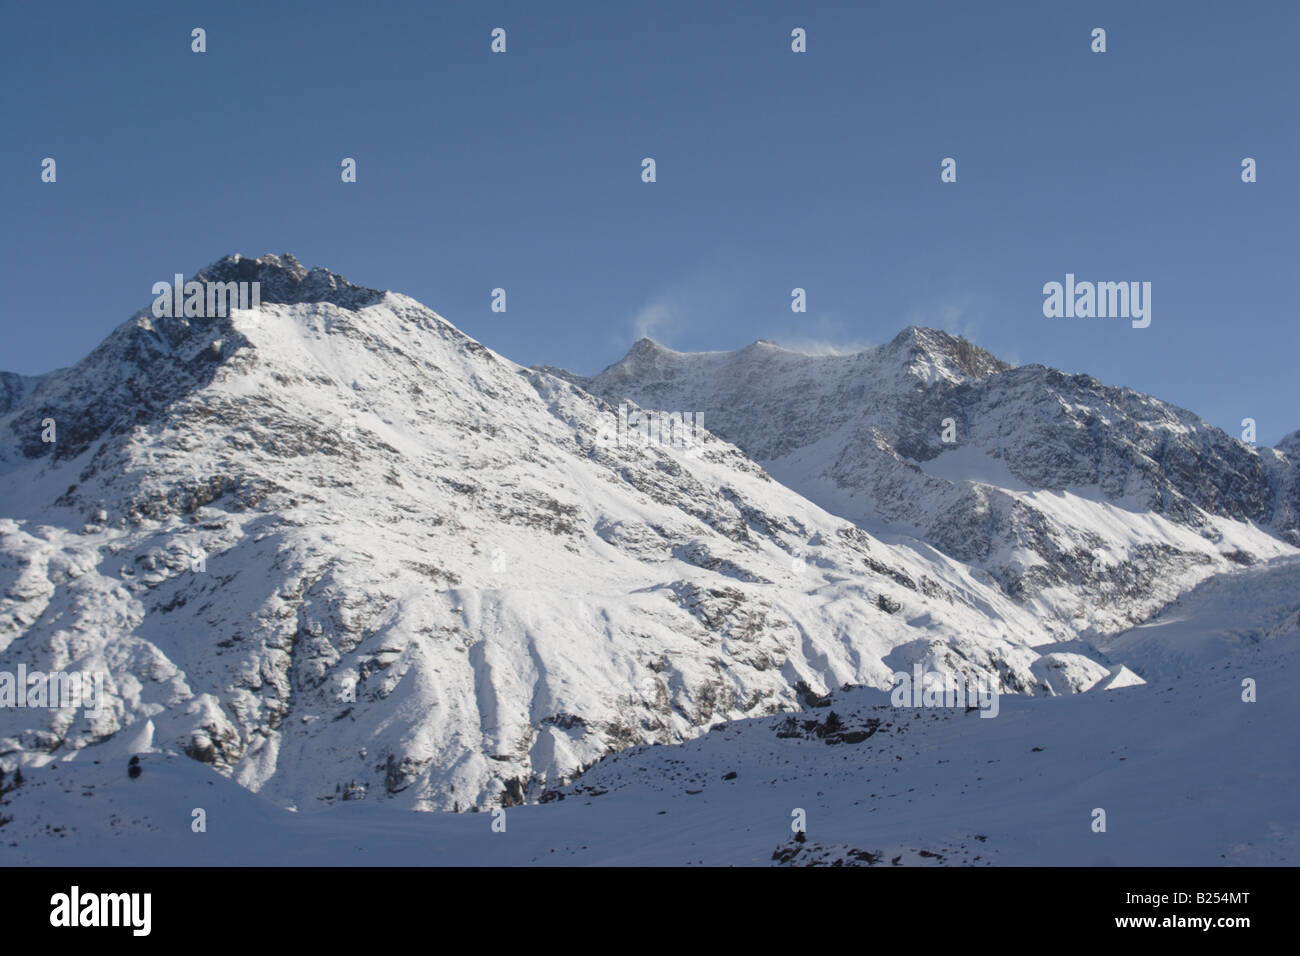 Skiing in Kaunertal valley, Austrian Alps. Stock Photo